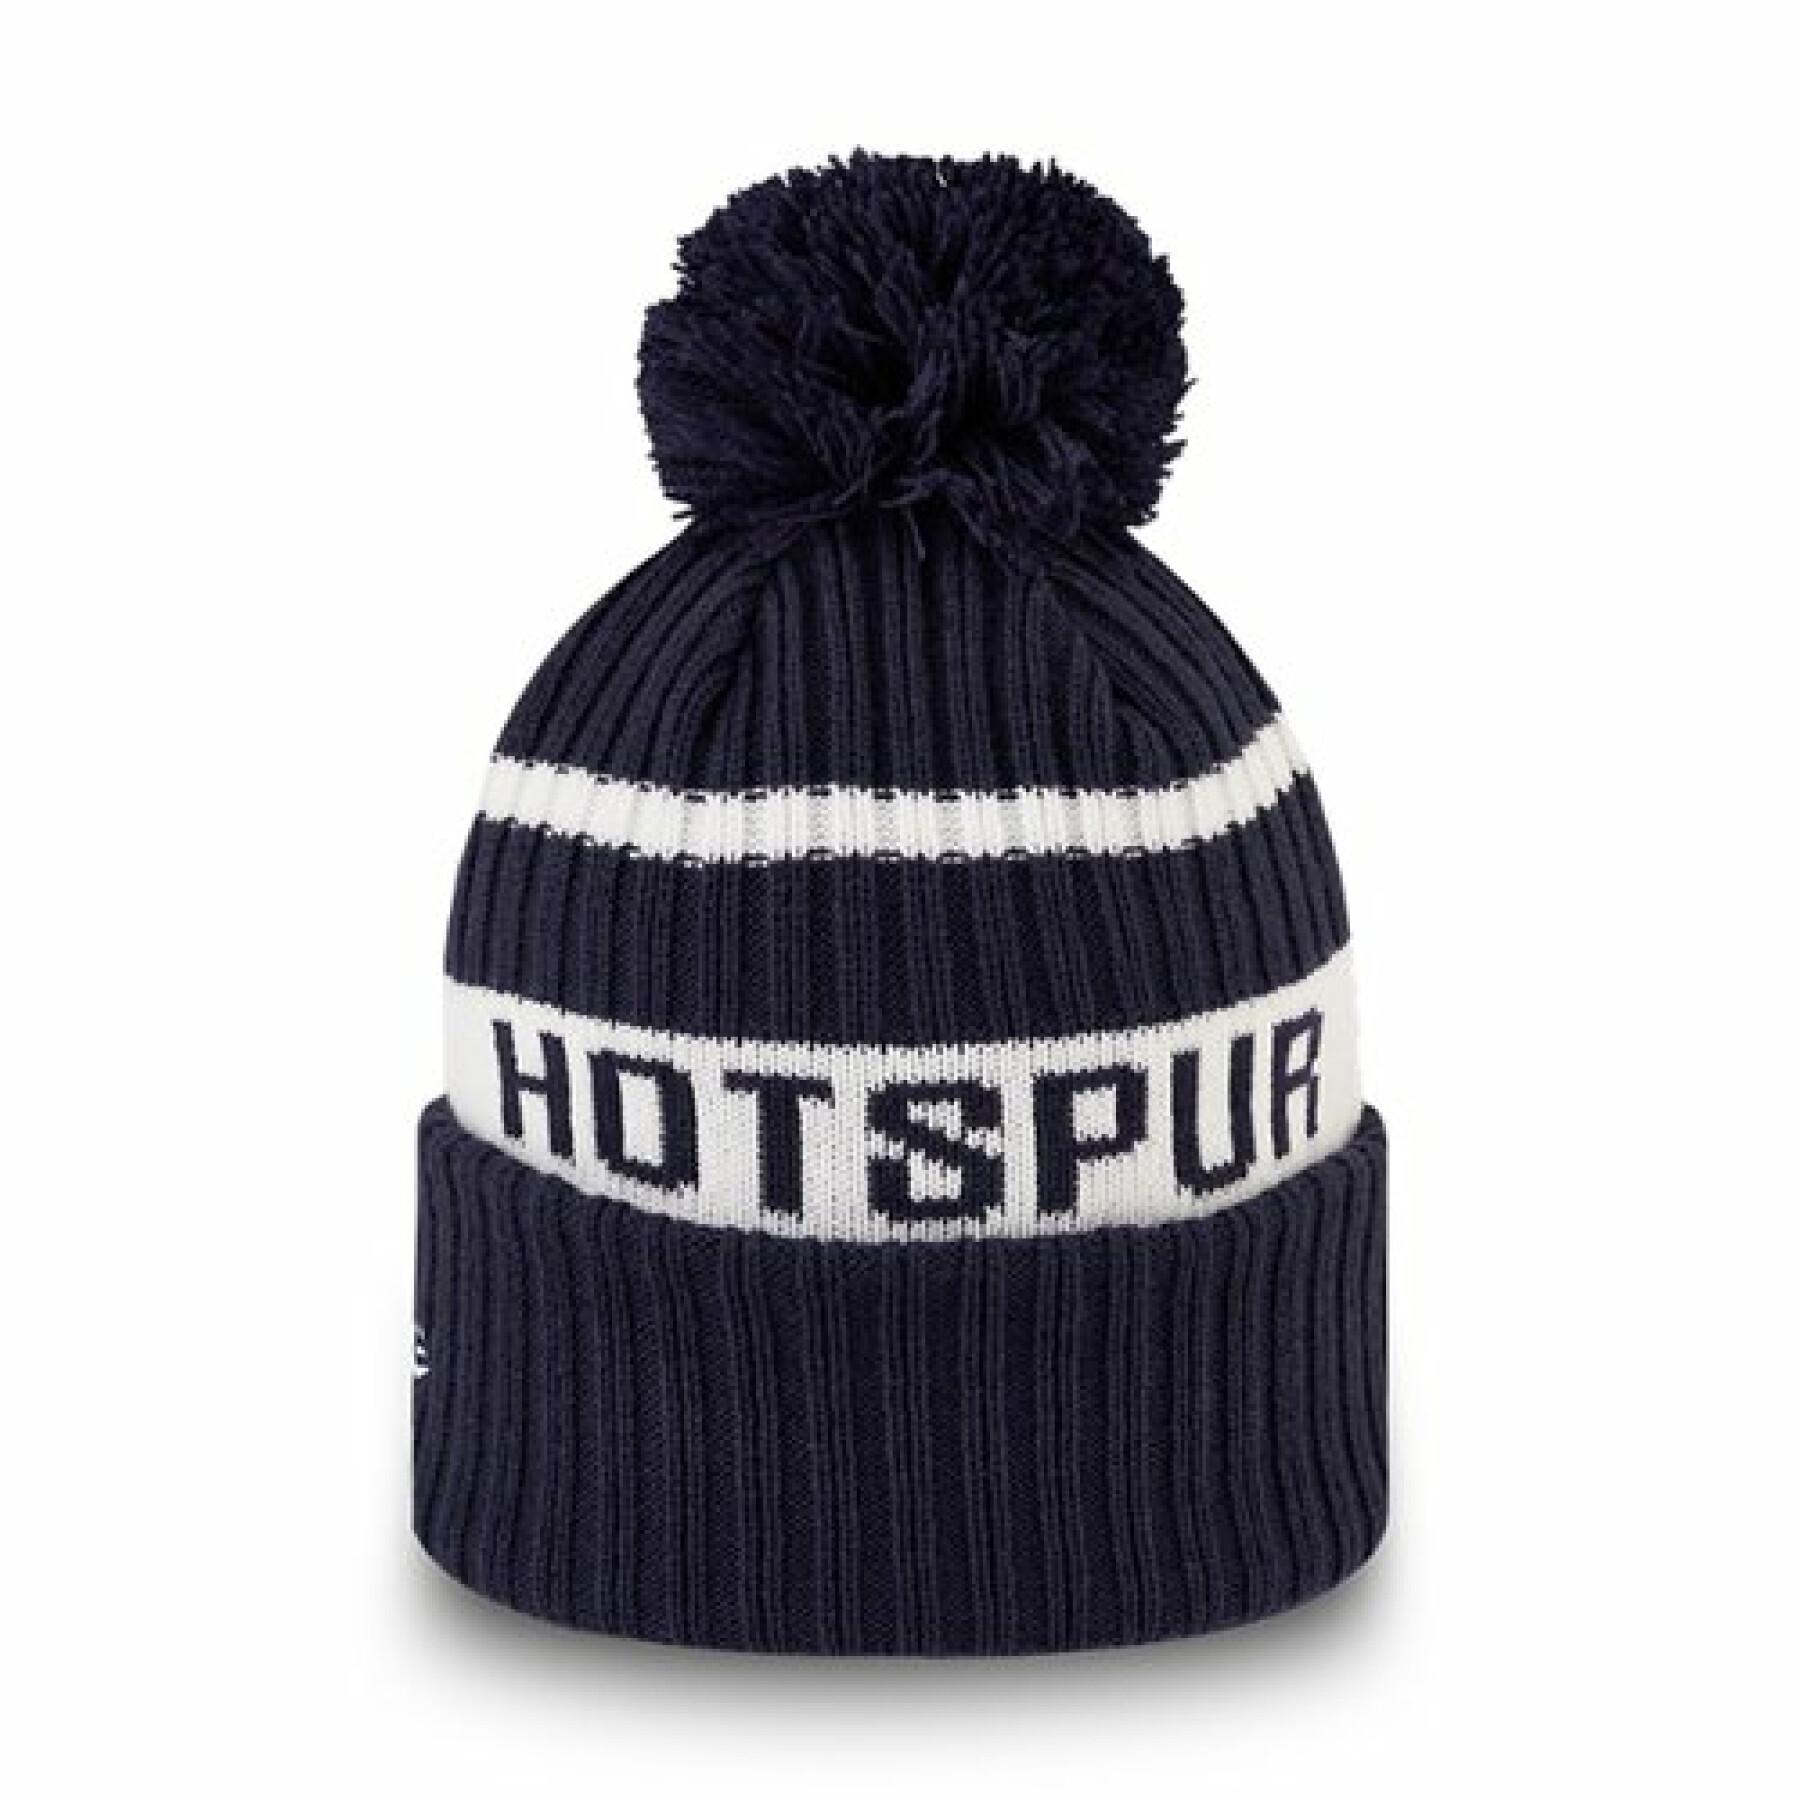 Cap New Era Stripe Wordmark Knit Tottenham Hotspur